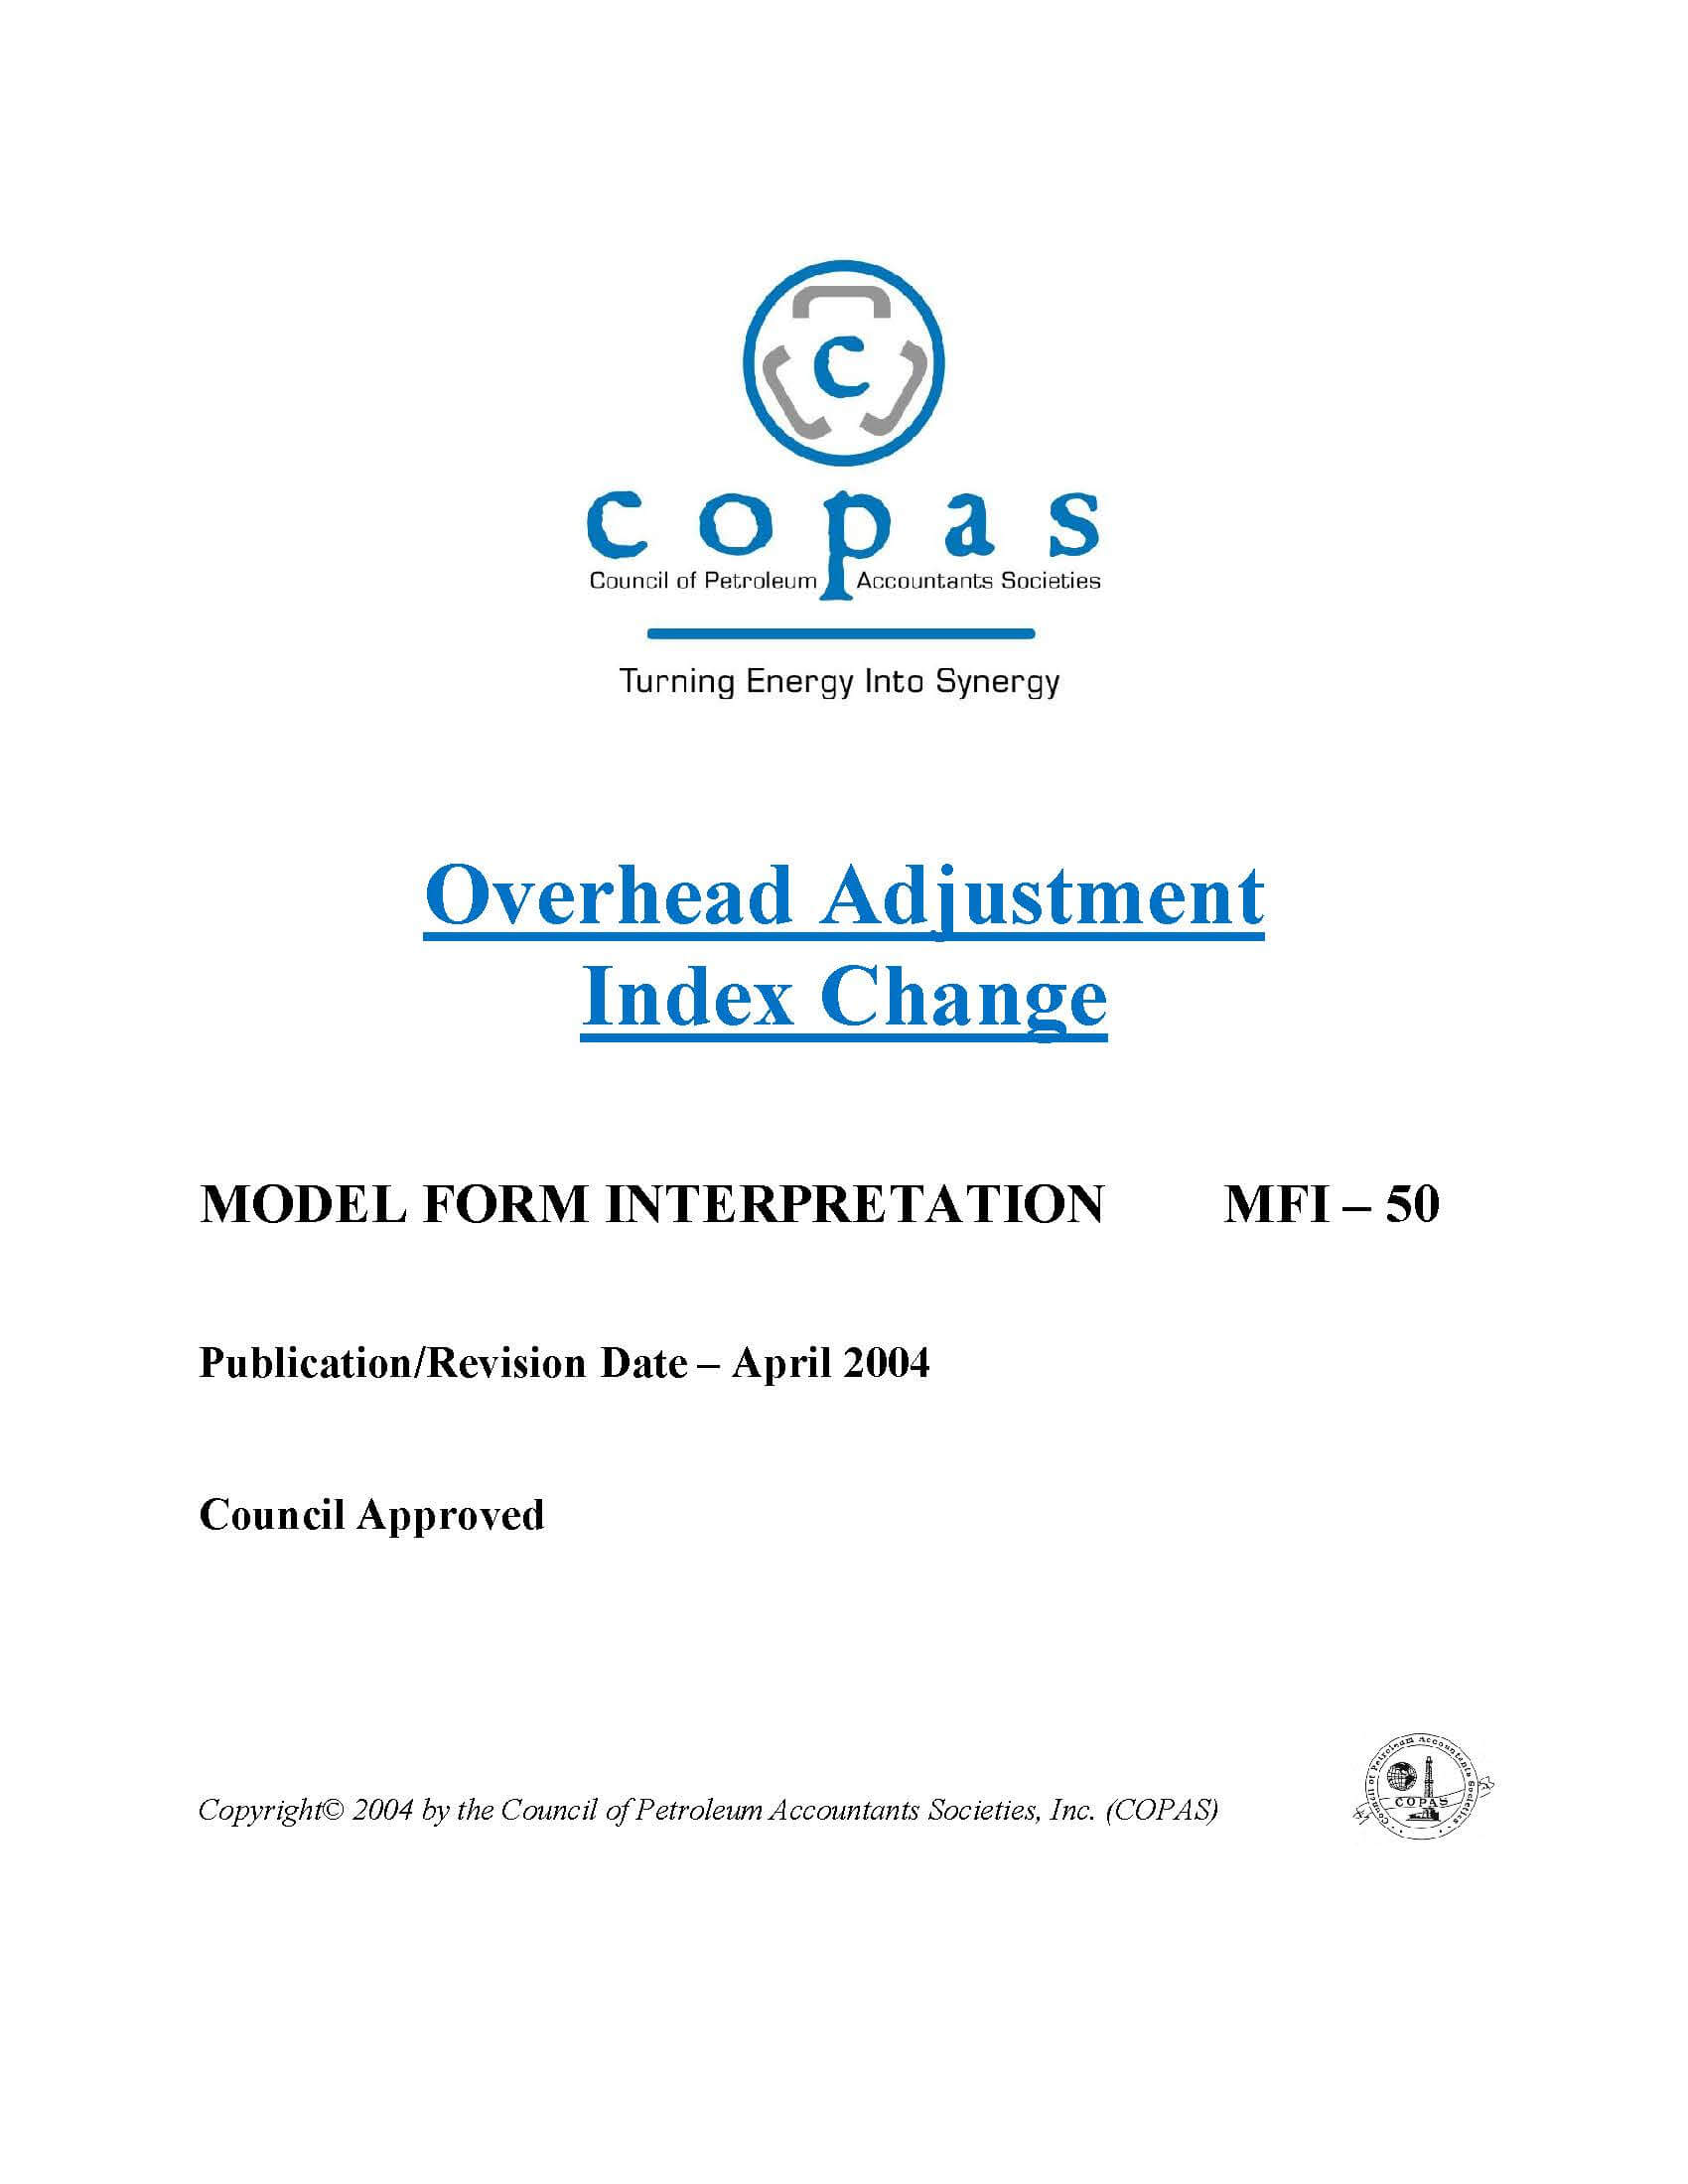 MFI-50 Overhead Adjustment Index Change